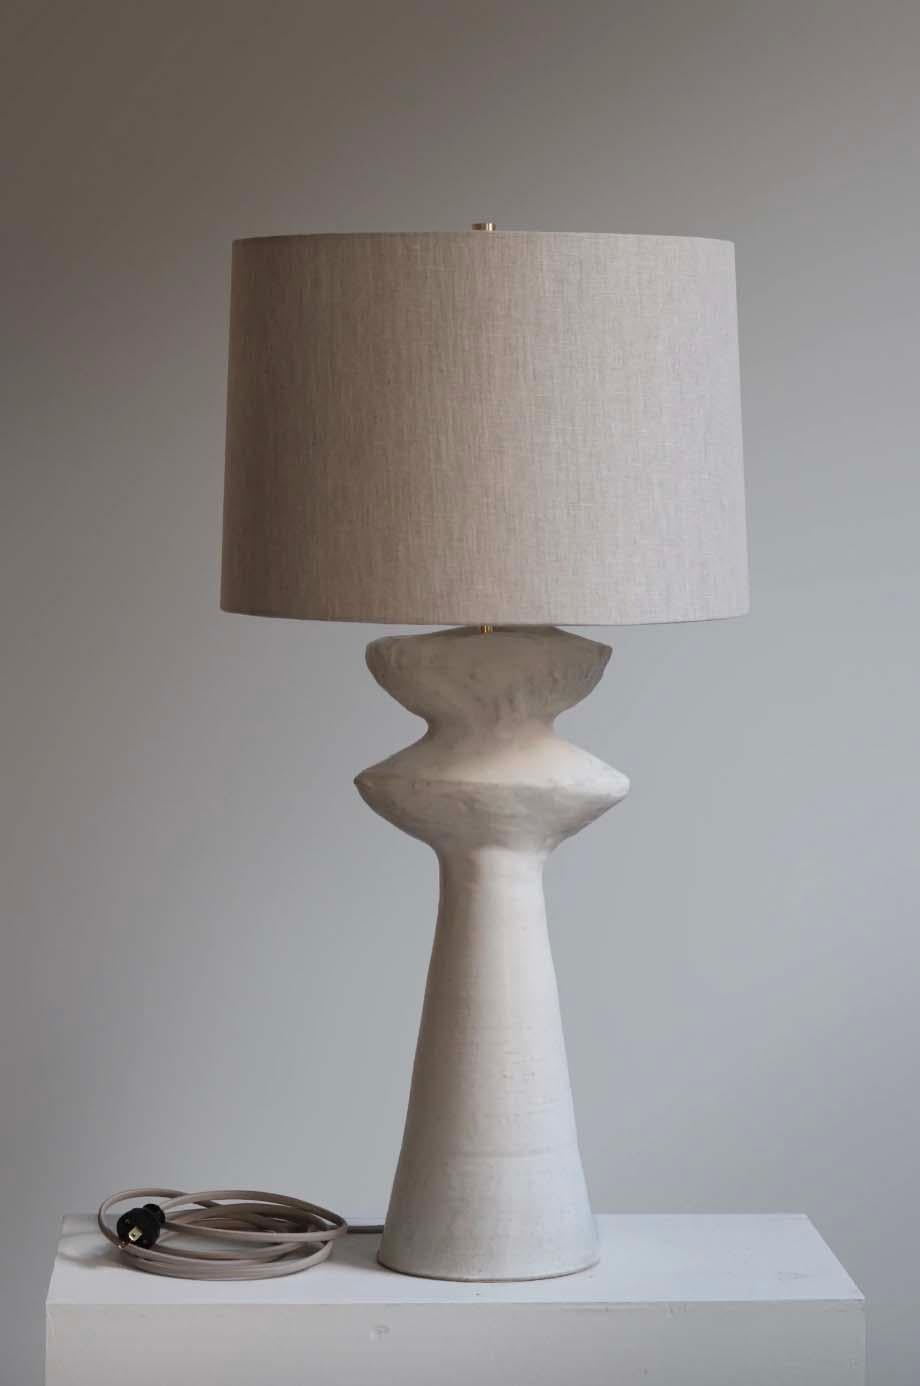 Die Cicero-Lampe ist eine handgefertigte Studiotöpferei des Keramikkünstlers Danny Kaplan. Inklusive Lampenschirm. Bitte beachten Sie, dass die Abmessungen bis zu einem Zentimeter variieren können.

Geboren in New York City und aufgewachsen in